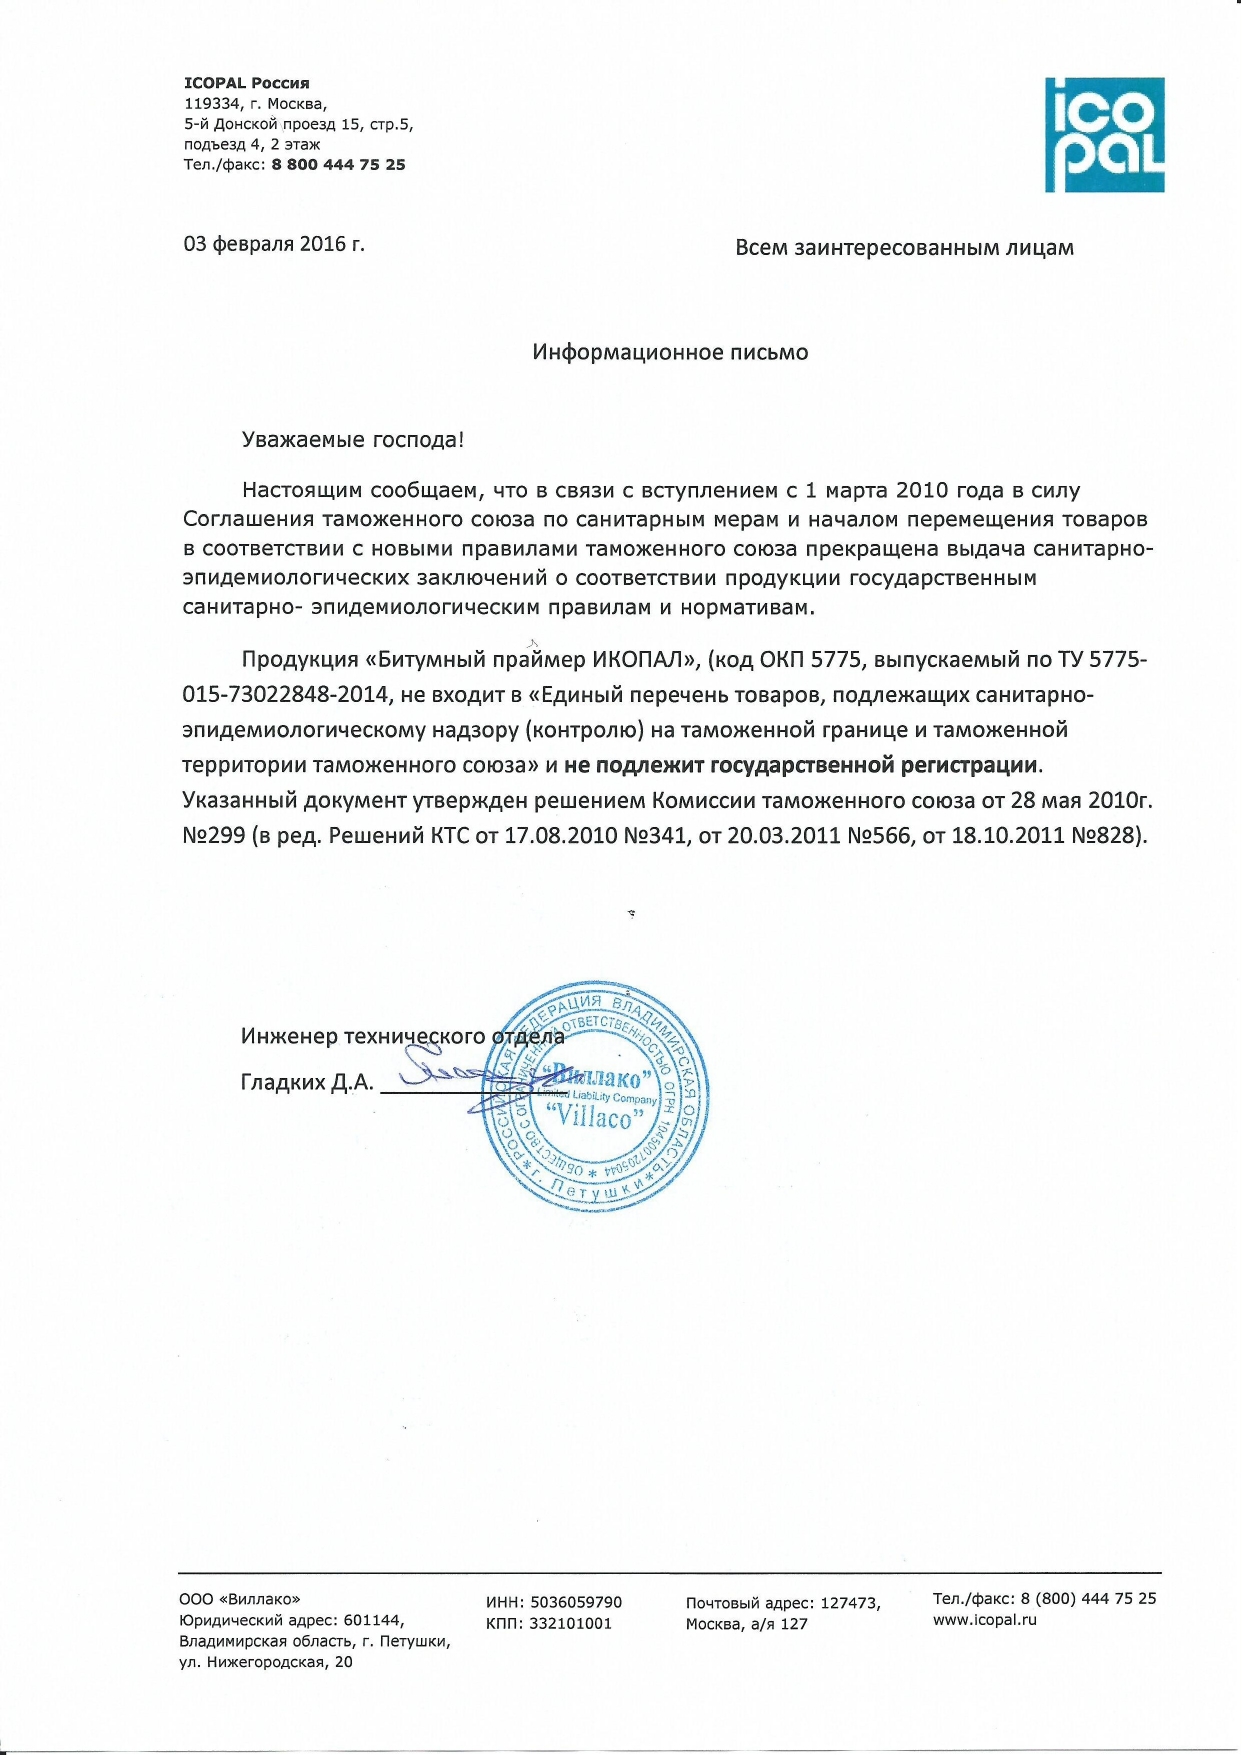 Информационное письмо о Соглашении таможенного союза по санитарным мерам